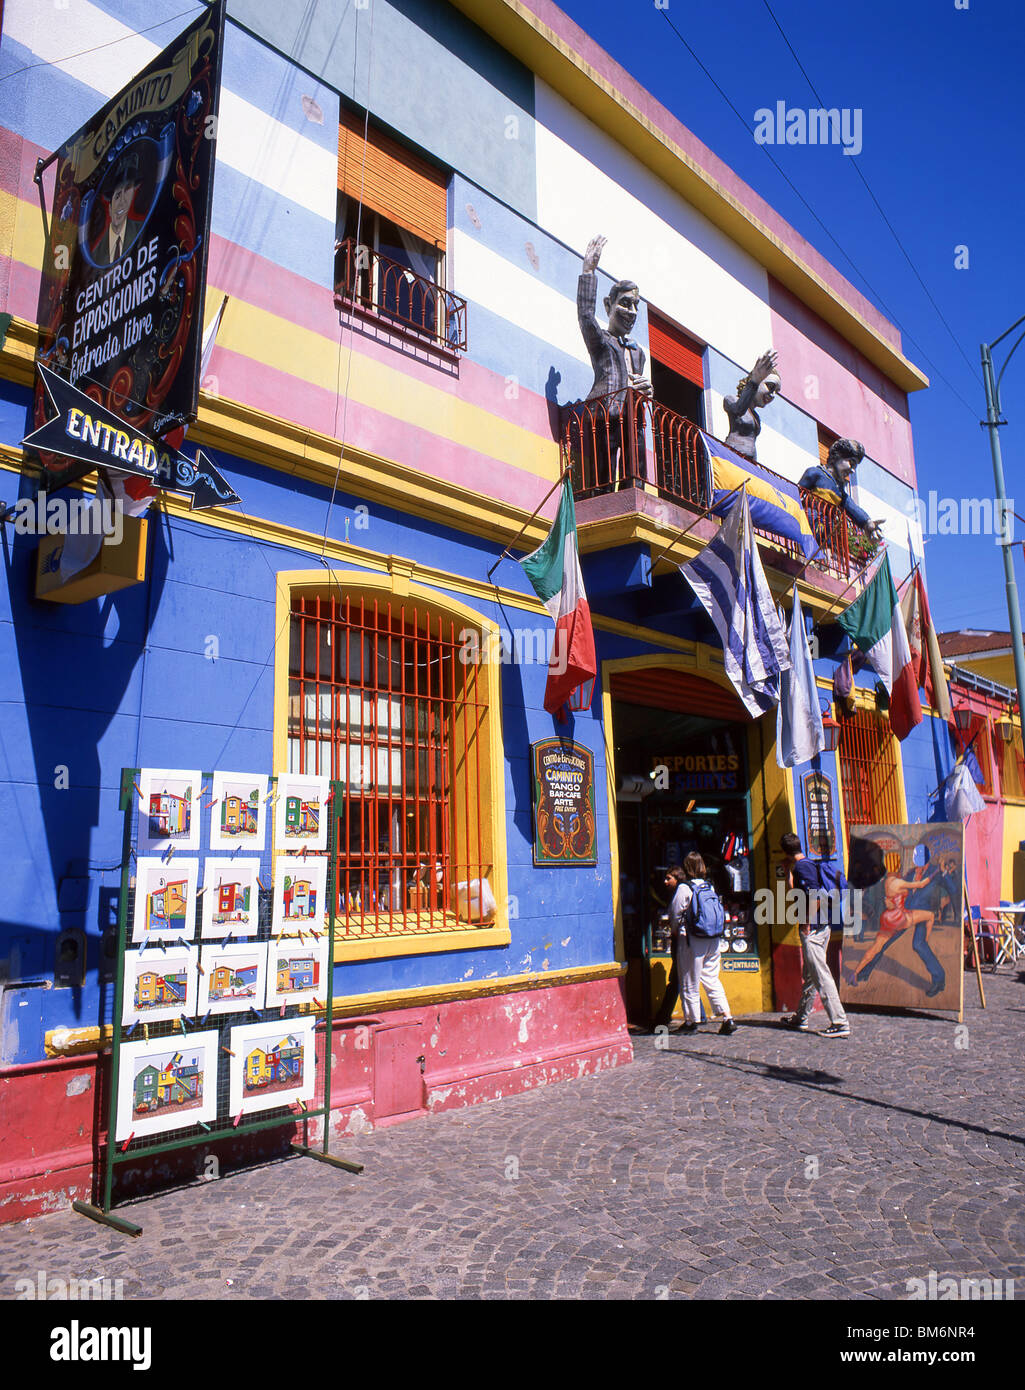 Les bâtiments aux couleurs pastel, la rue Caminito, la Boca, Buenos Aires, Argentine Banque D'Images